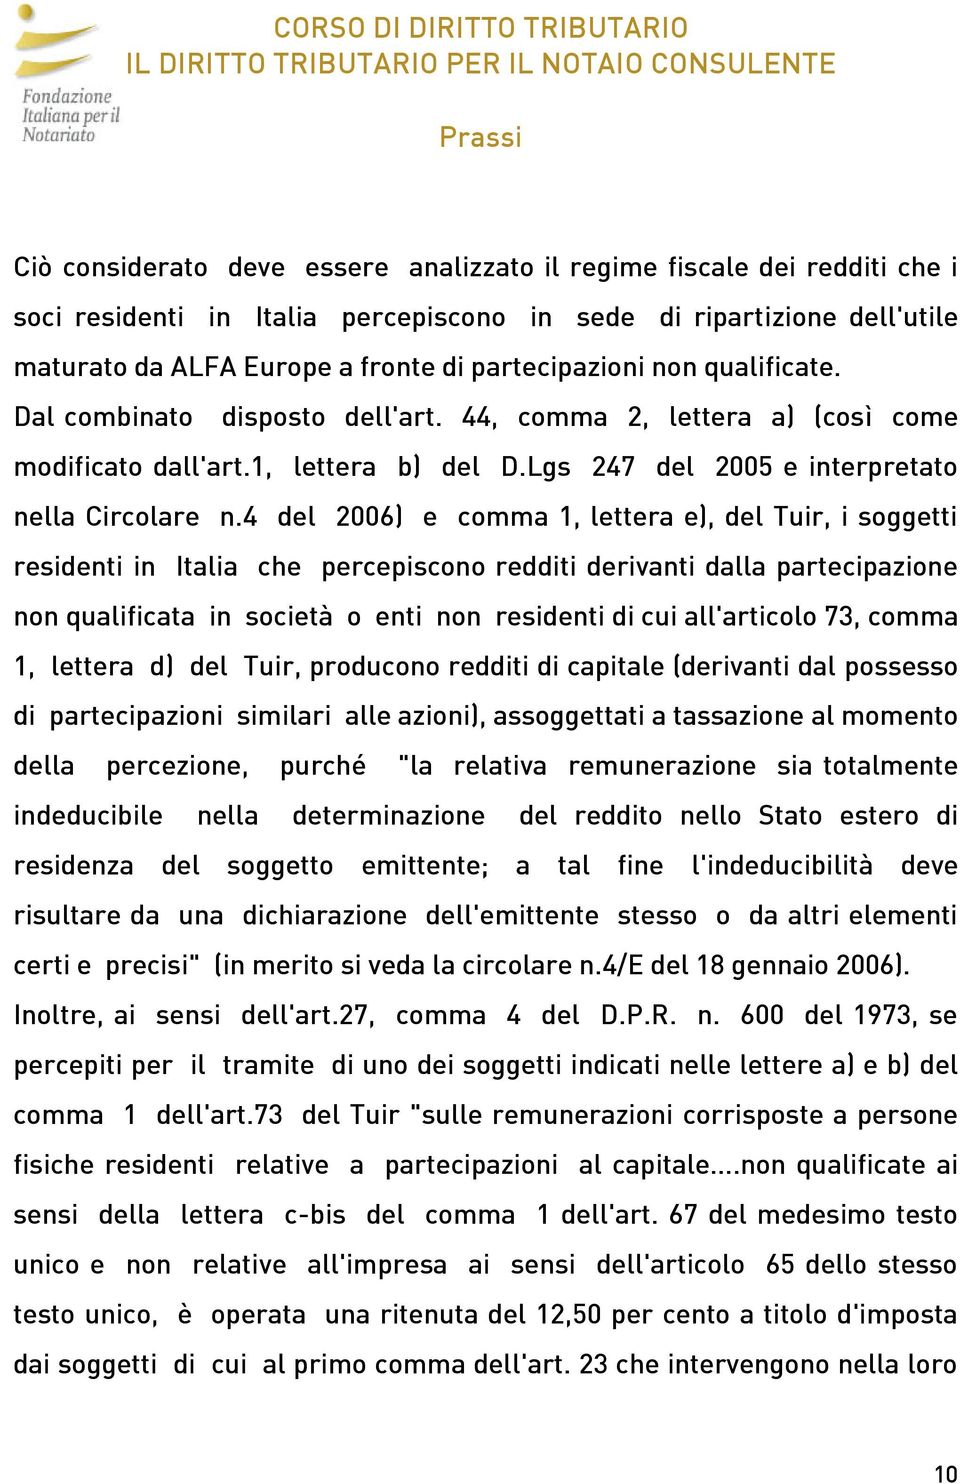 4 del 2006) e comma 1, lettera e), del Tuir, i soggetti residenti in Italia che percepiscono redditi derivanti dalla partecipazione non qualificata in società o enti non residenti di cui all'articolo